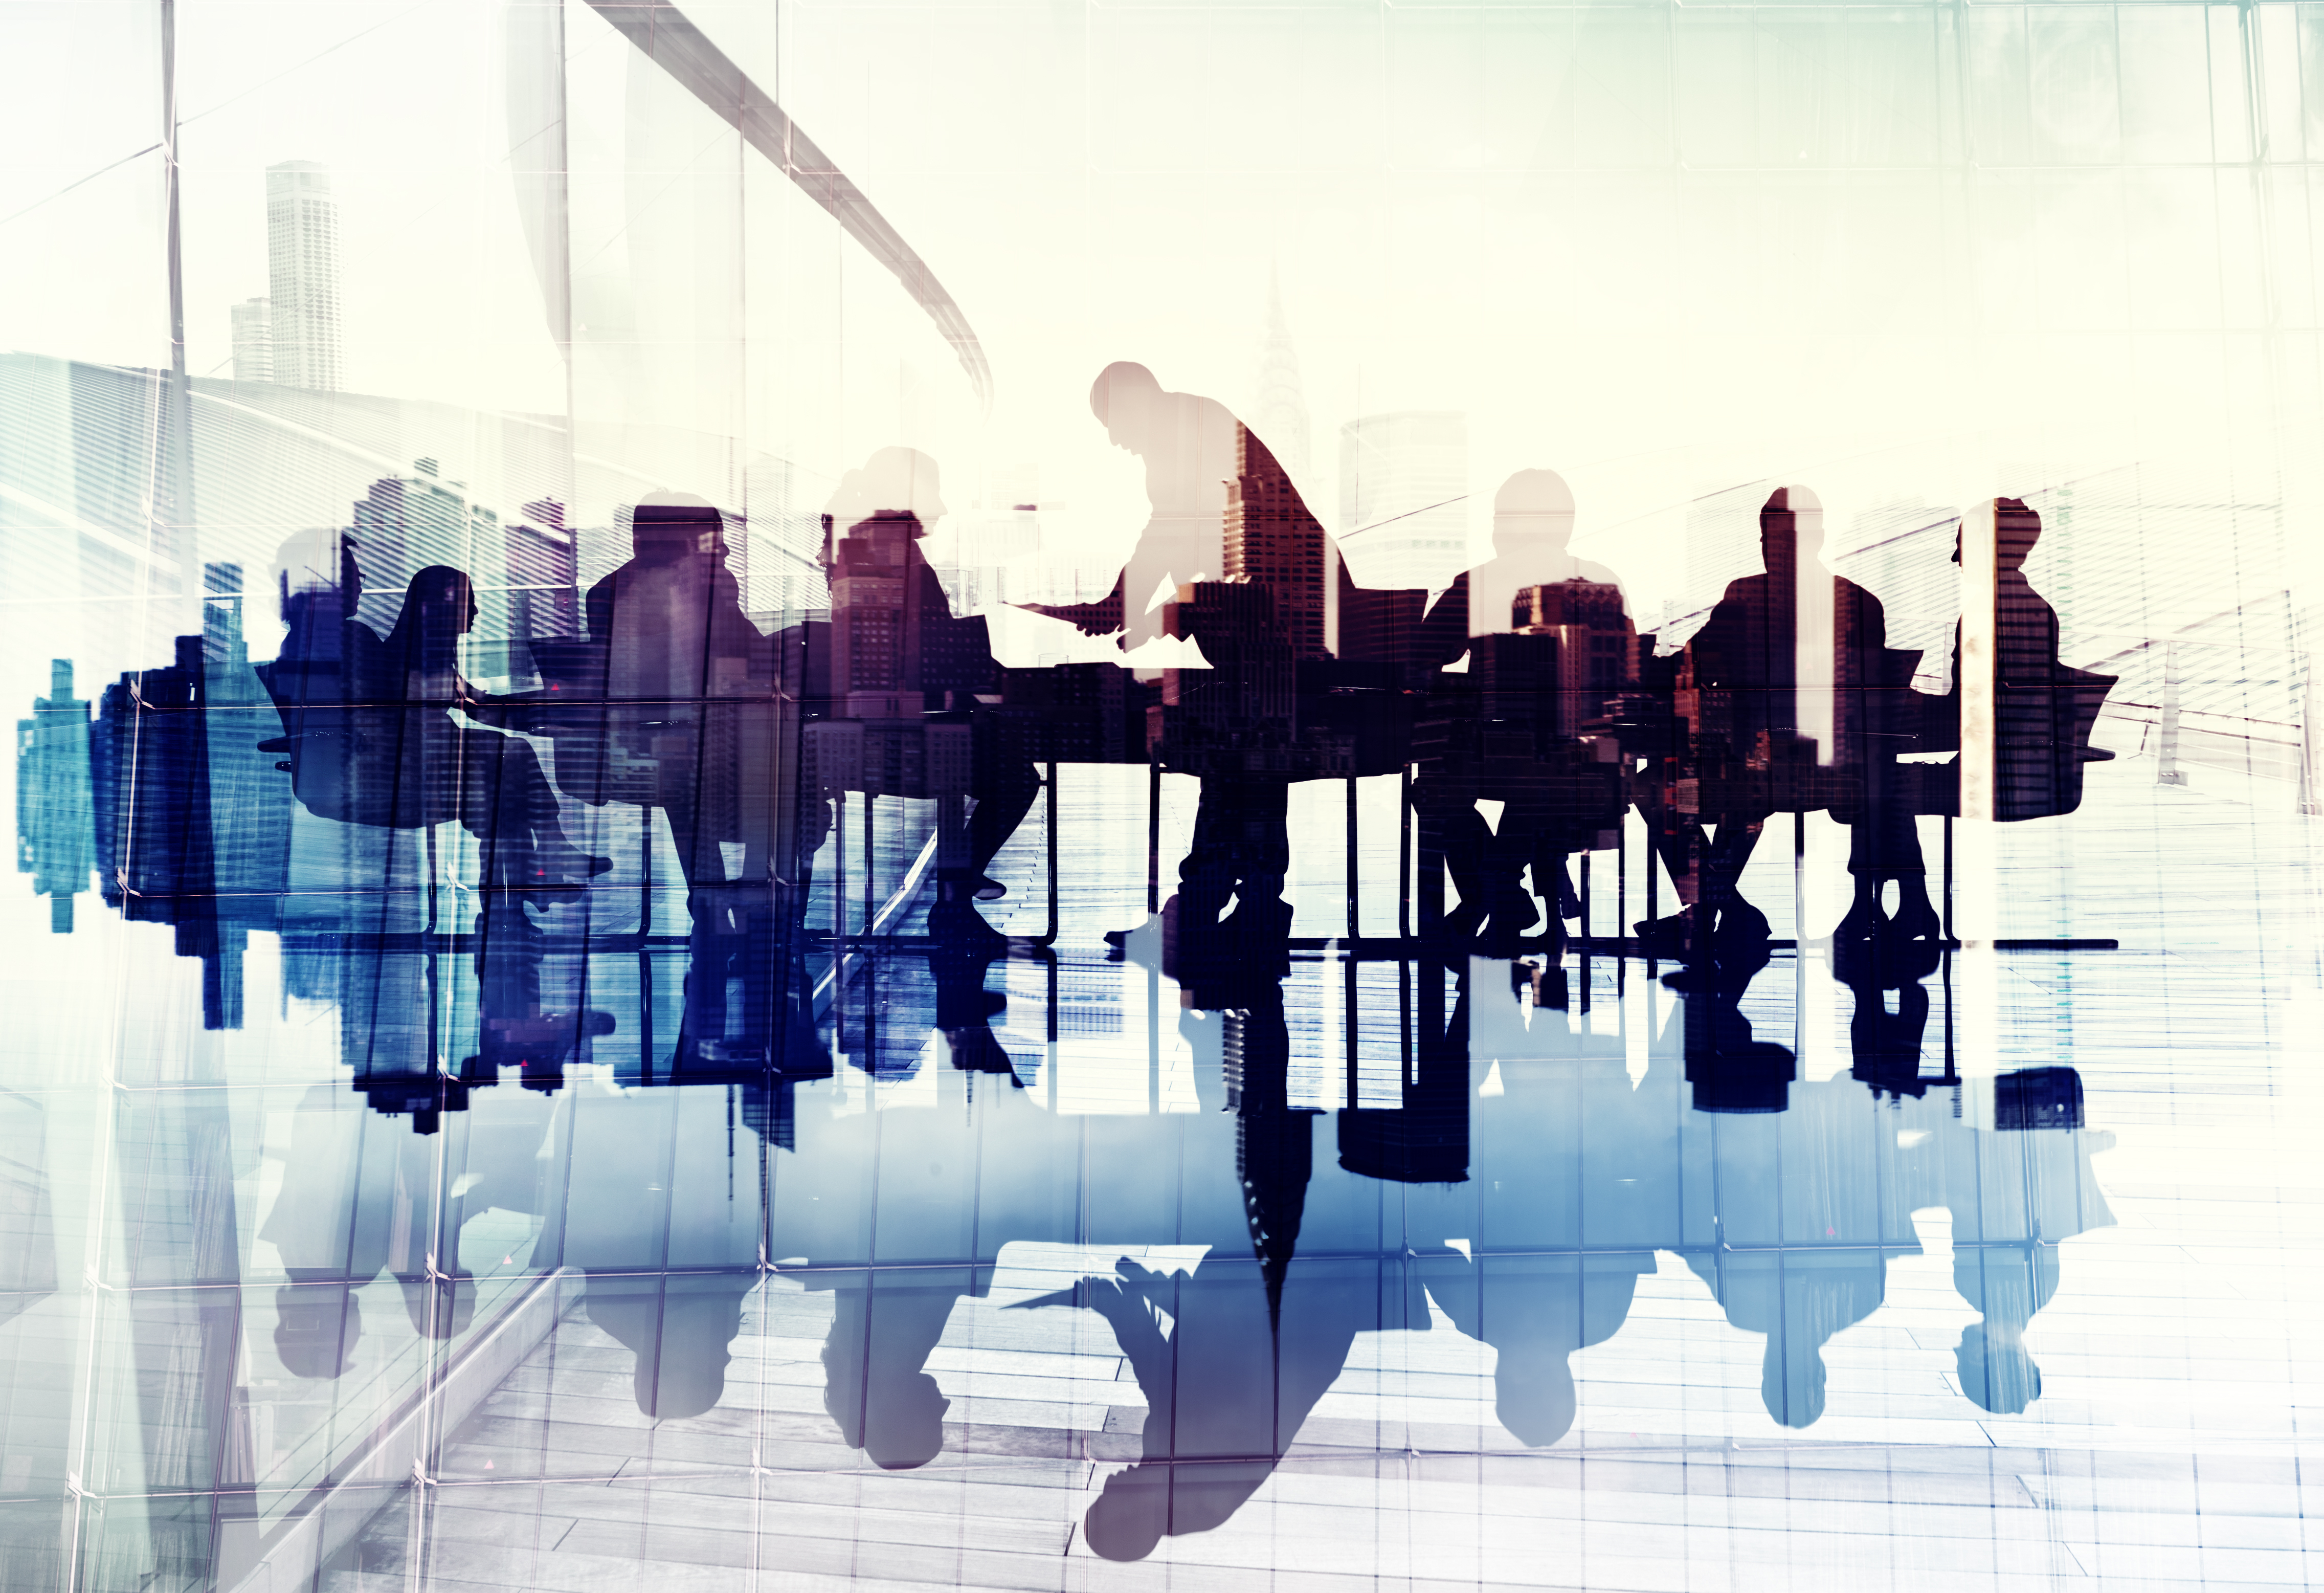 Immagine astratta di silhouette di professionisti durante una riunione